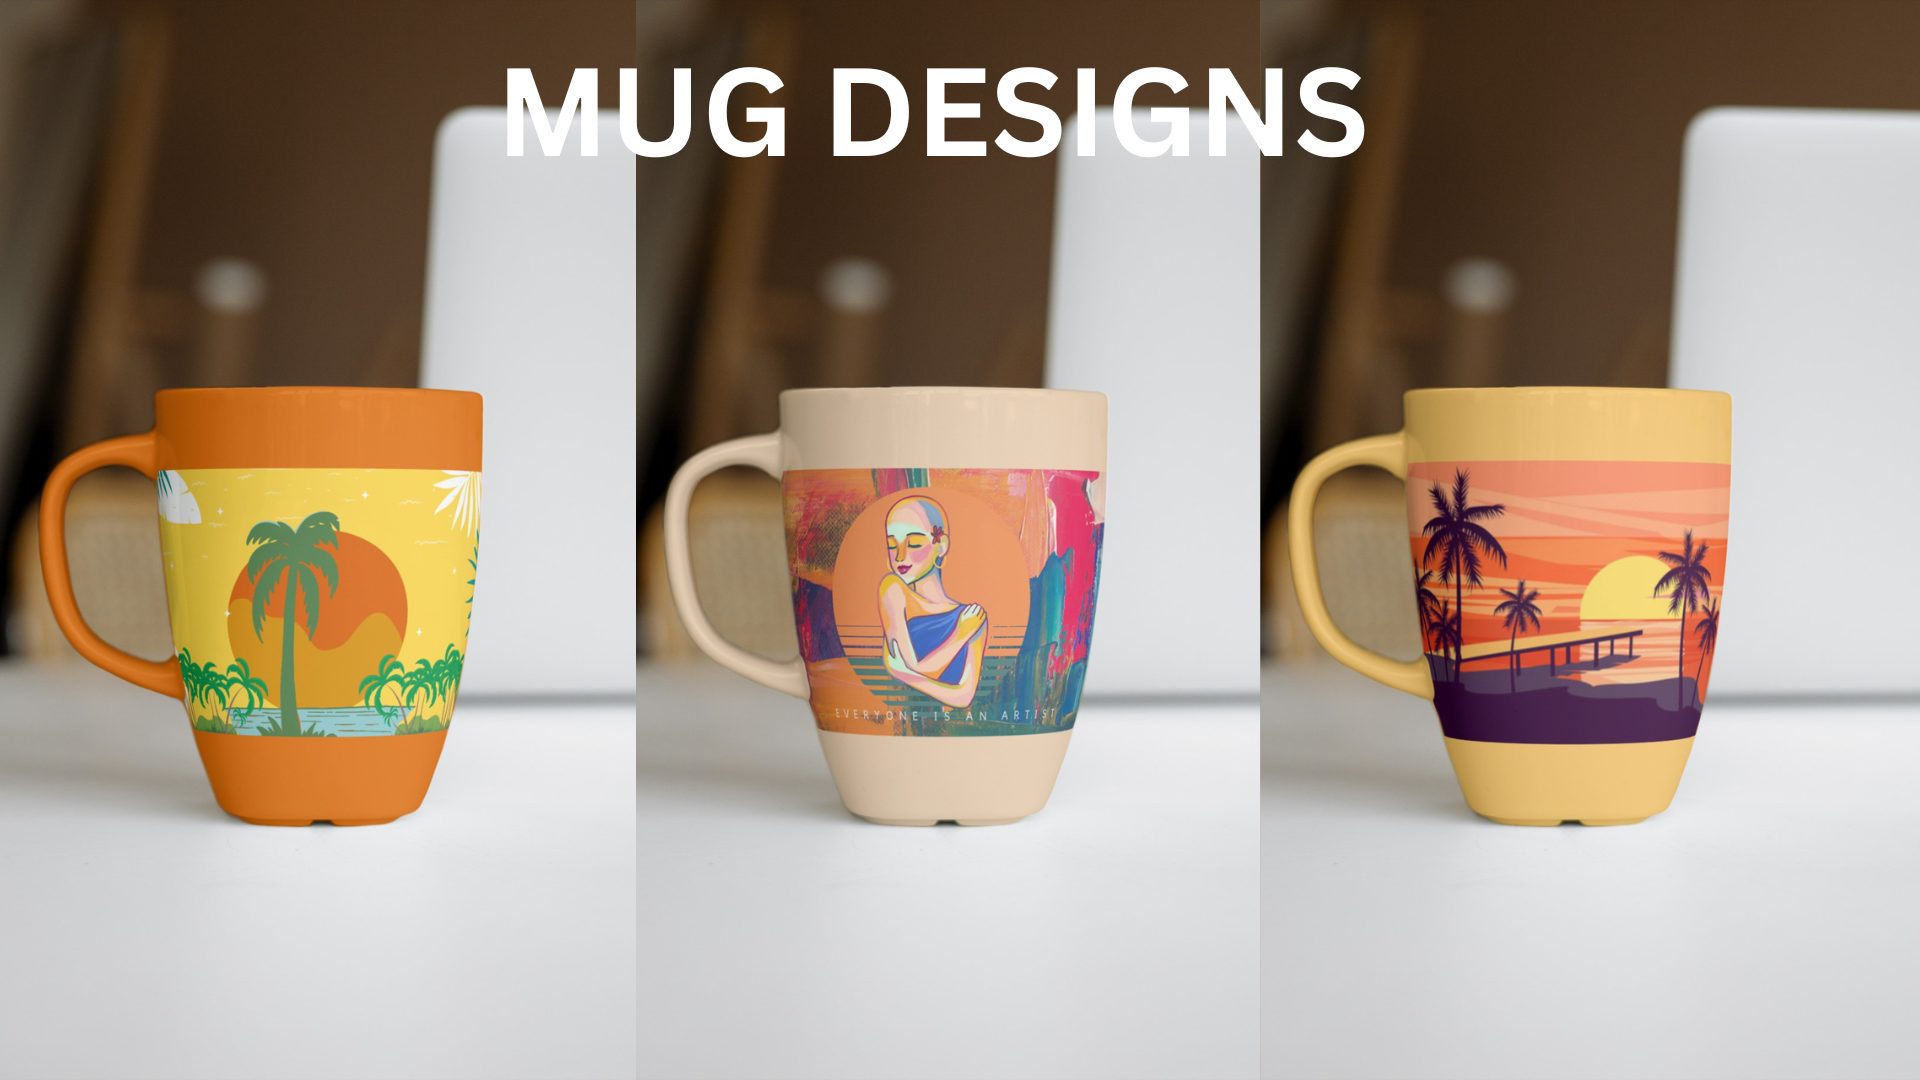 33893I will design a unique custom coffee mug design